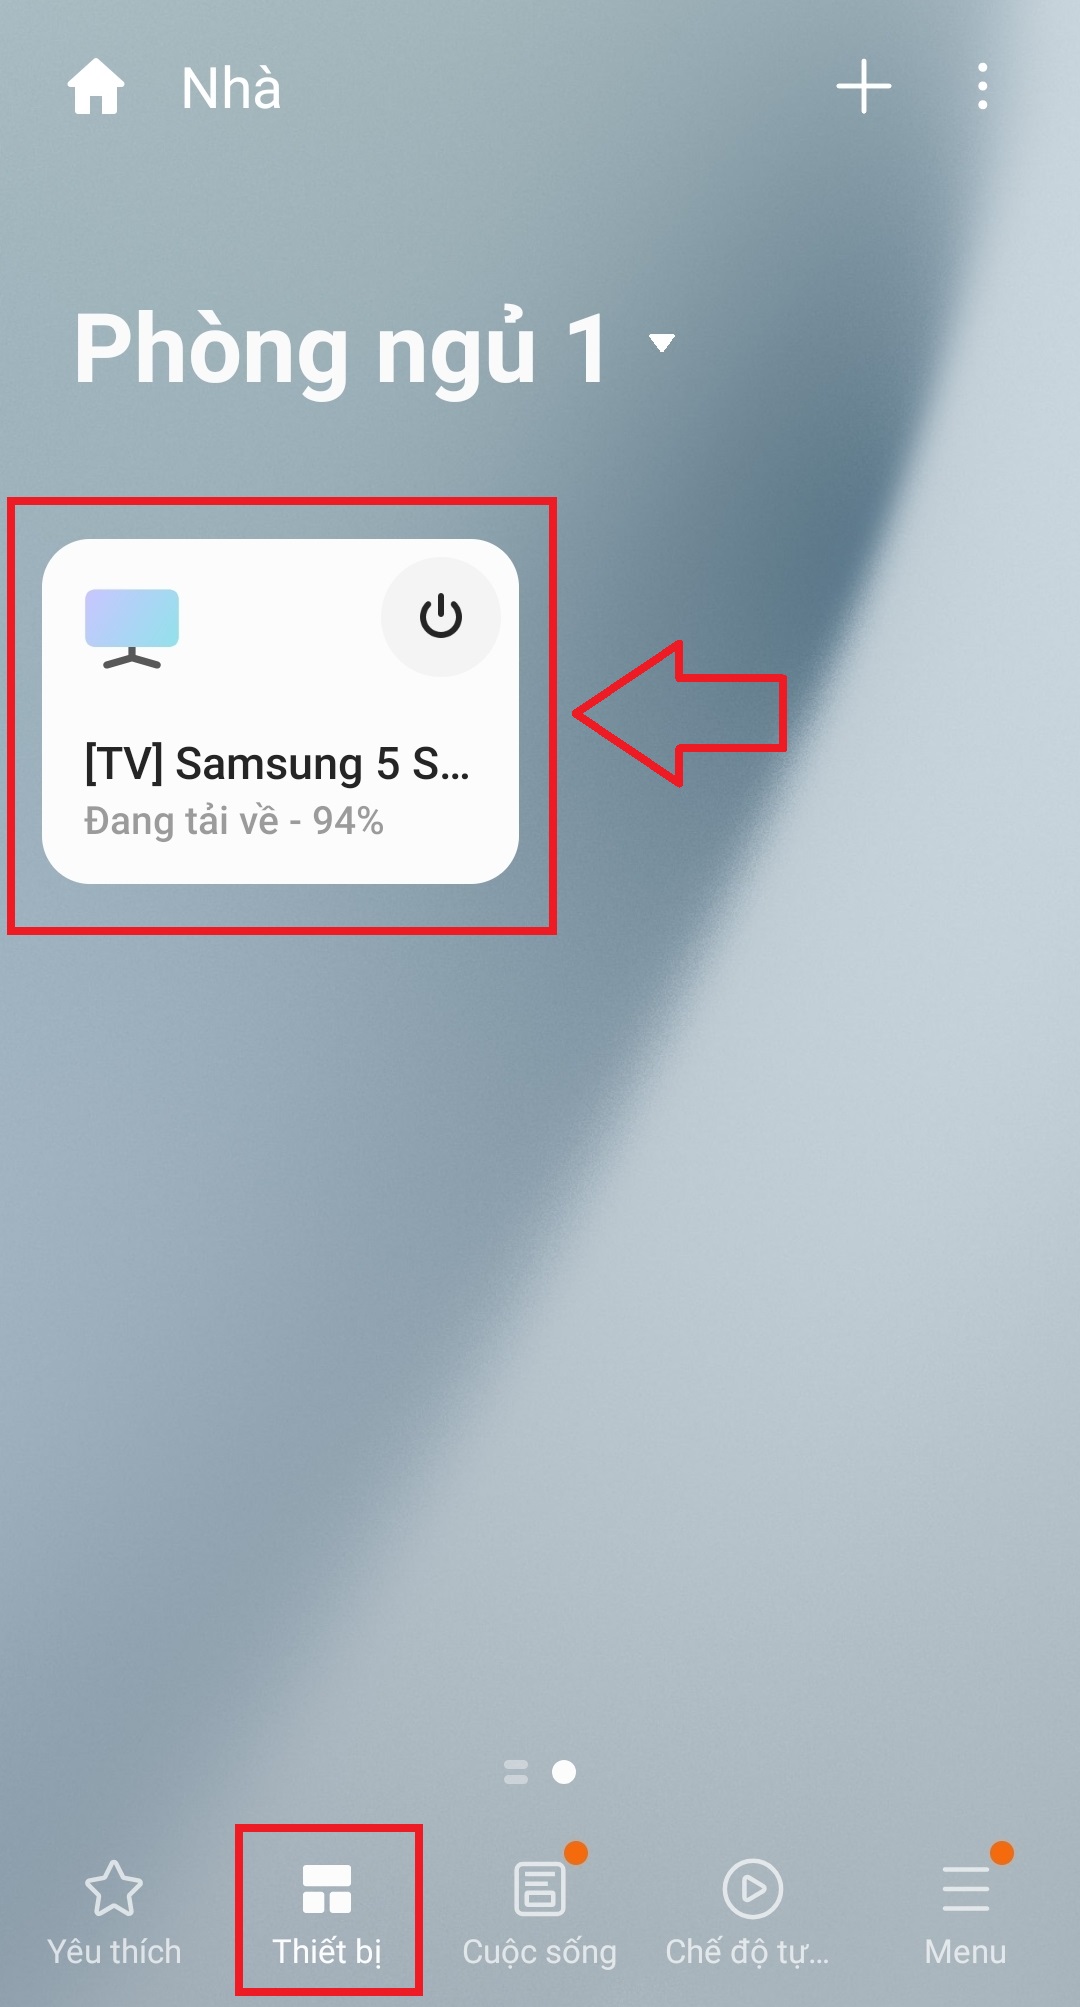 Hướng dẫn sử dụng ứng dụng SmartThings điều khiển Smart tivi Samsung > Tại mục Thiết bị, bạn nhấn chọn tên tivi nhà bạn và đợi vài giây để kết nối điều khiển.